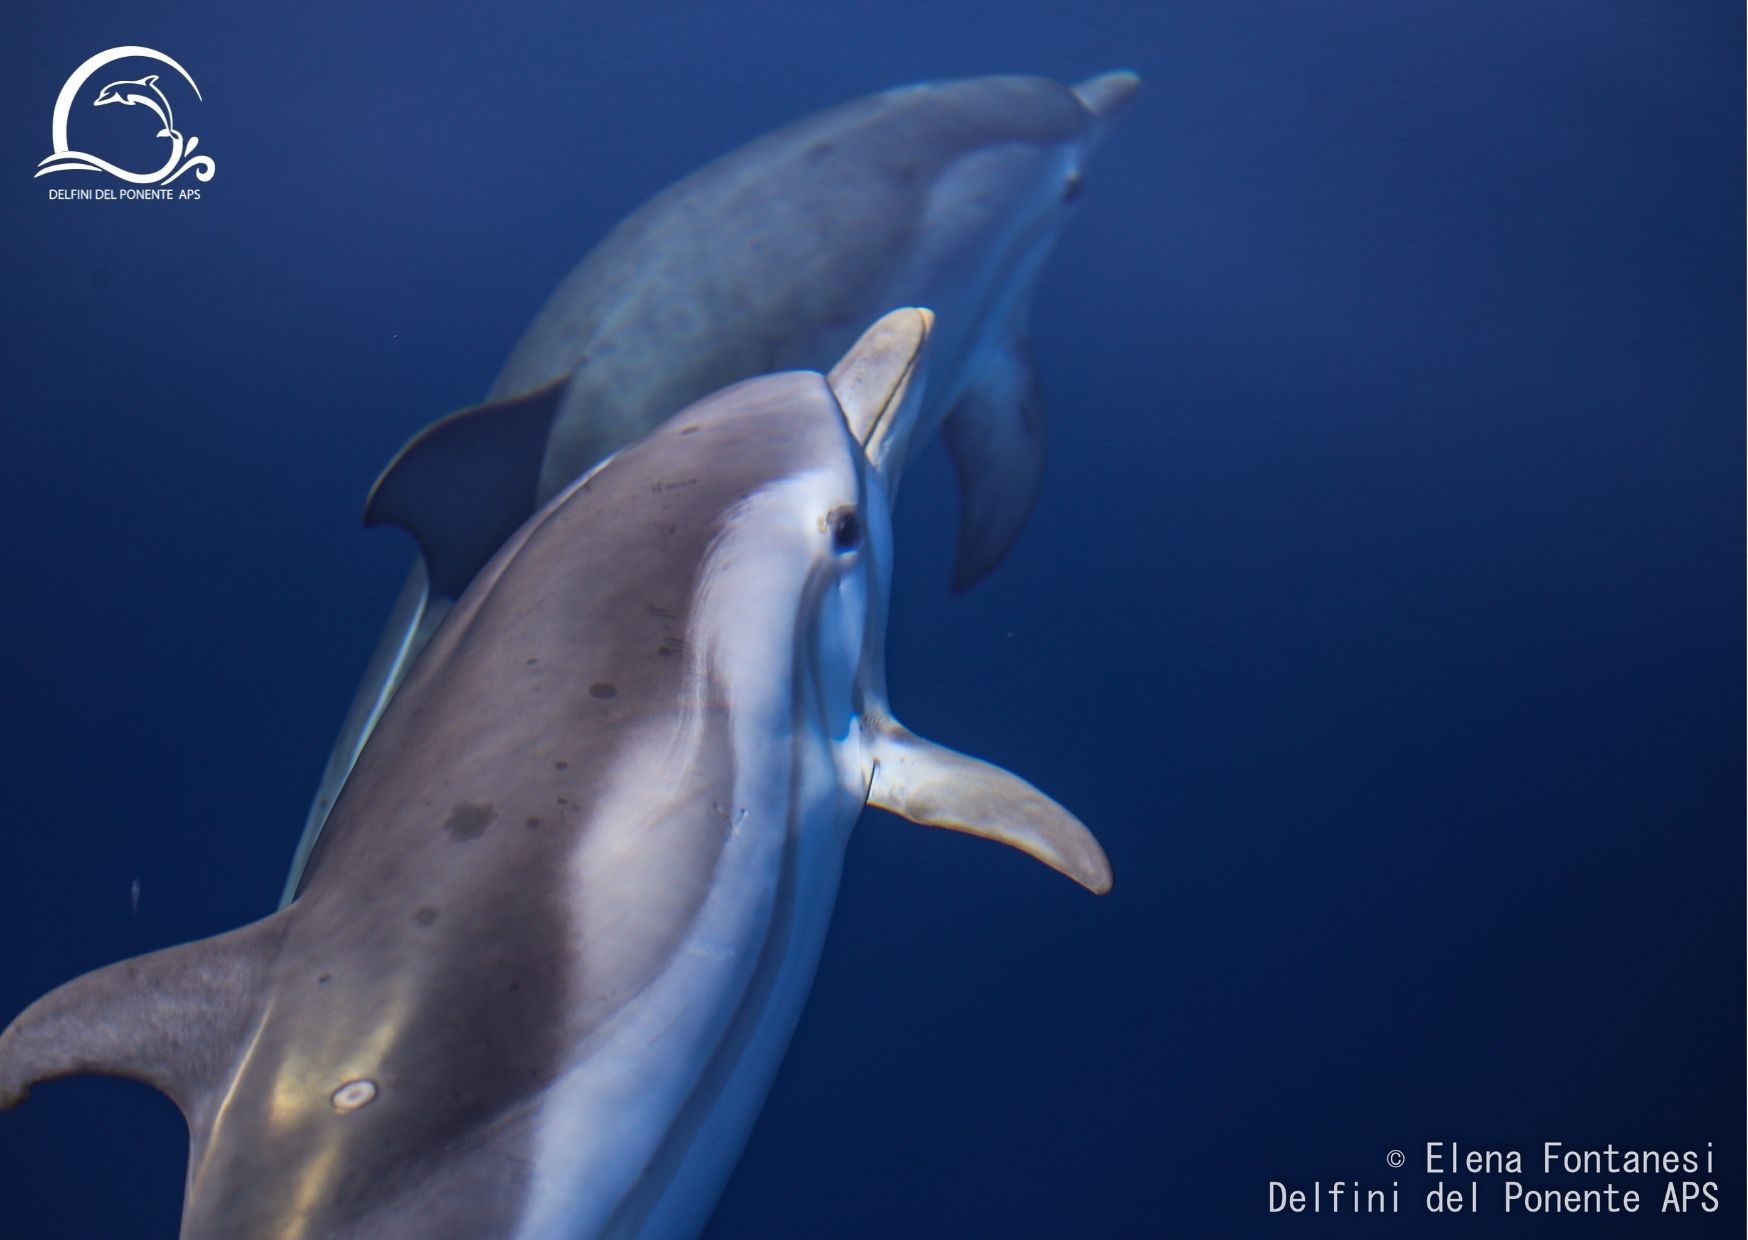 associazione aps delfini del ponente delfino